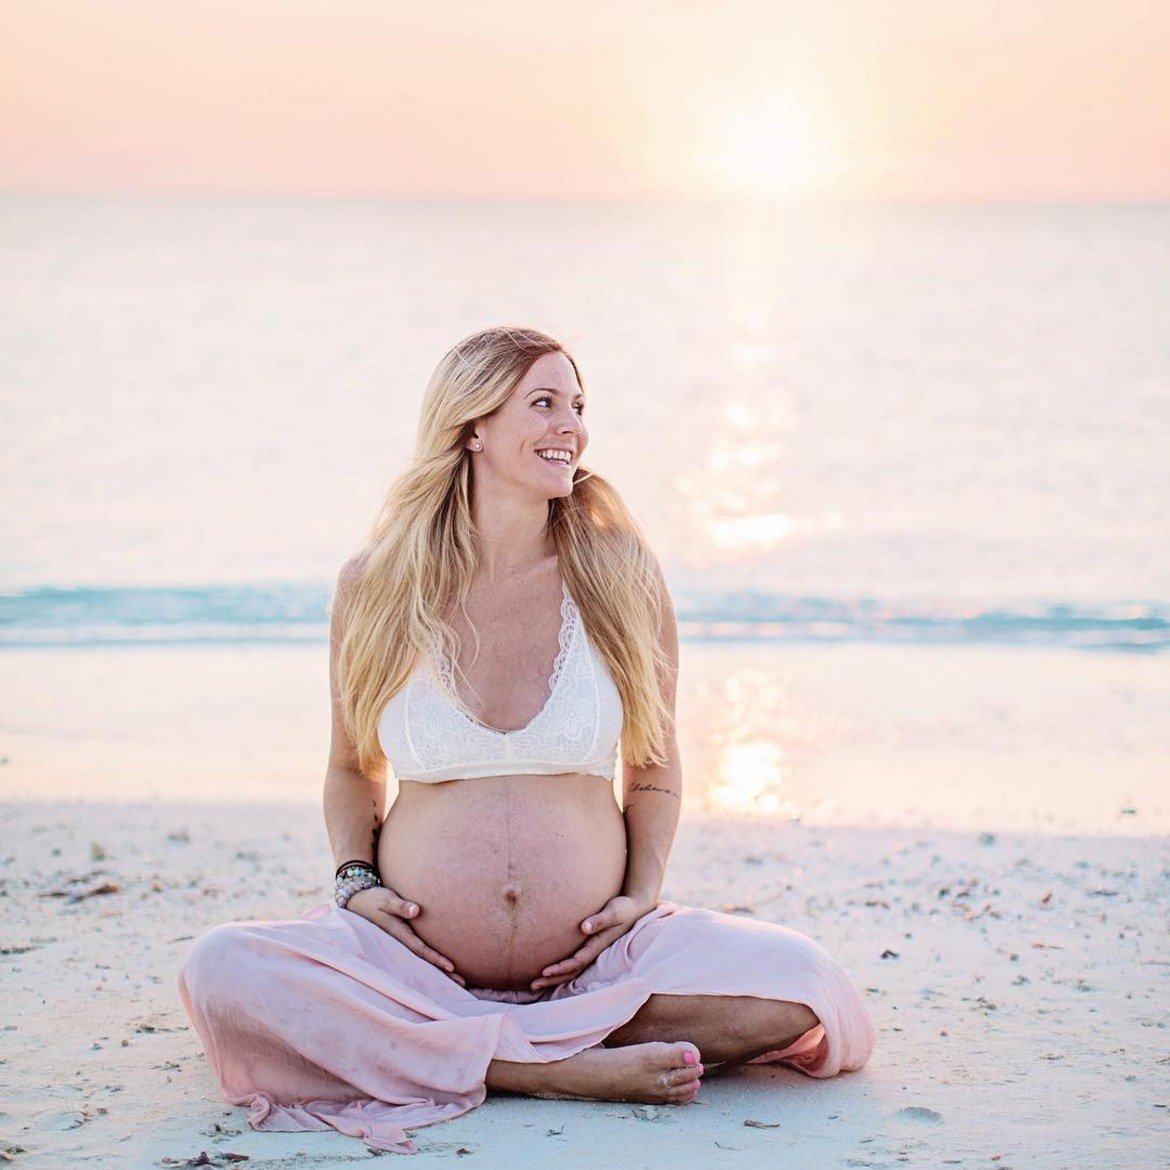 28-годишната йога инструкторка Рейчъл Братан от Каруба става онлайн сензация по случайност, когато започва да пътува по света през 2013-а година. Сега Рейчъл печели по 25 хиляди долара на публикация в instagram и е млада, щастлива майка.